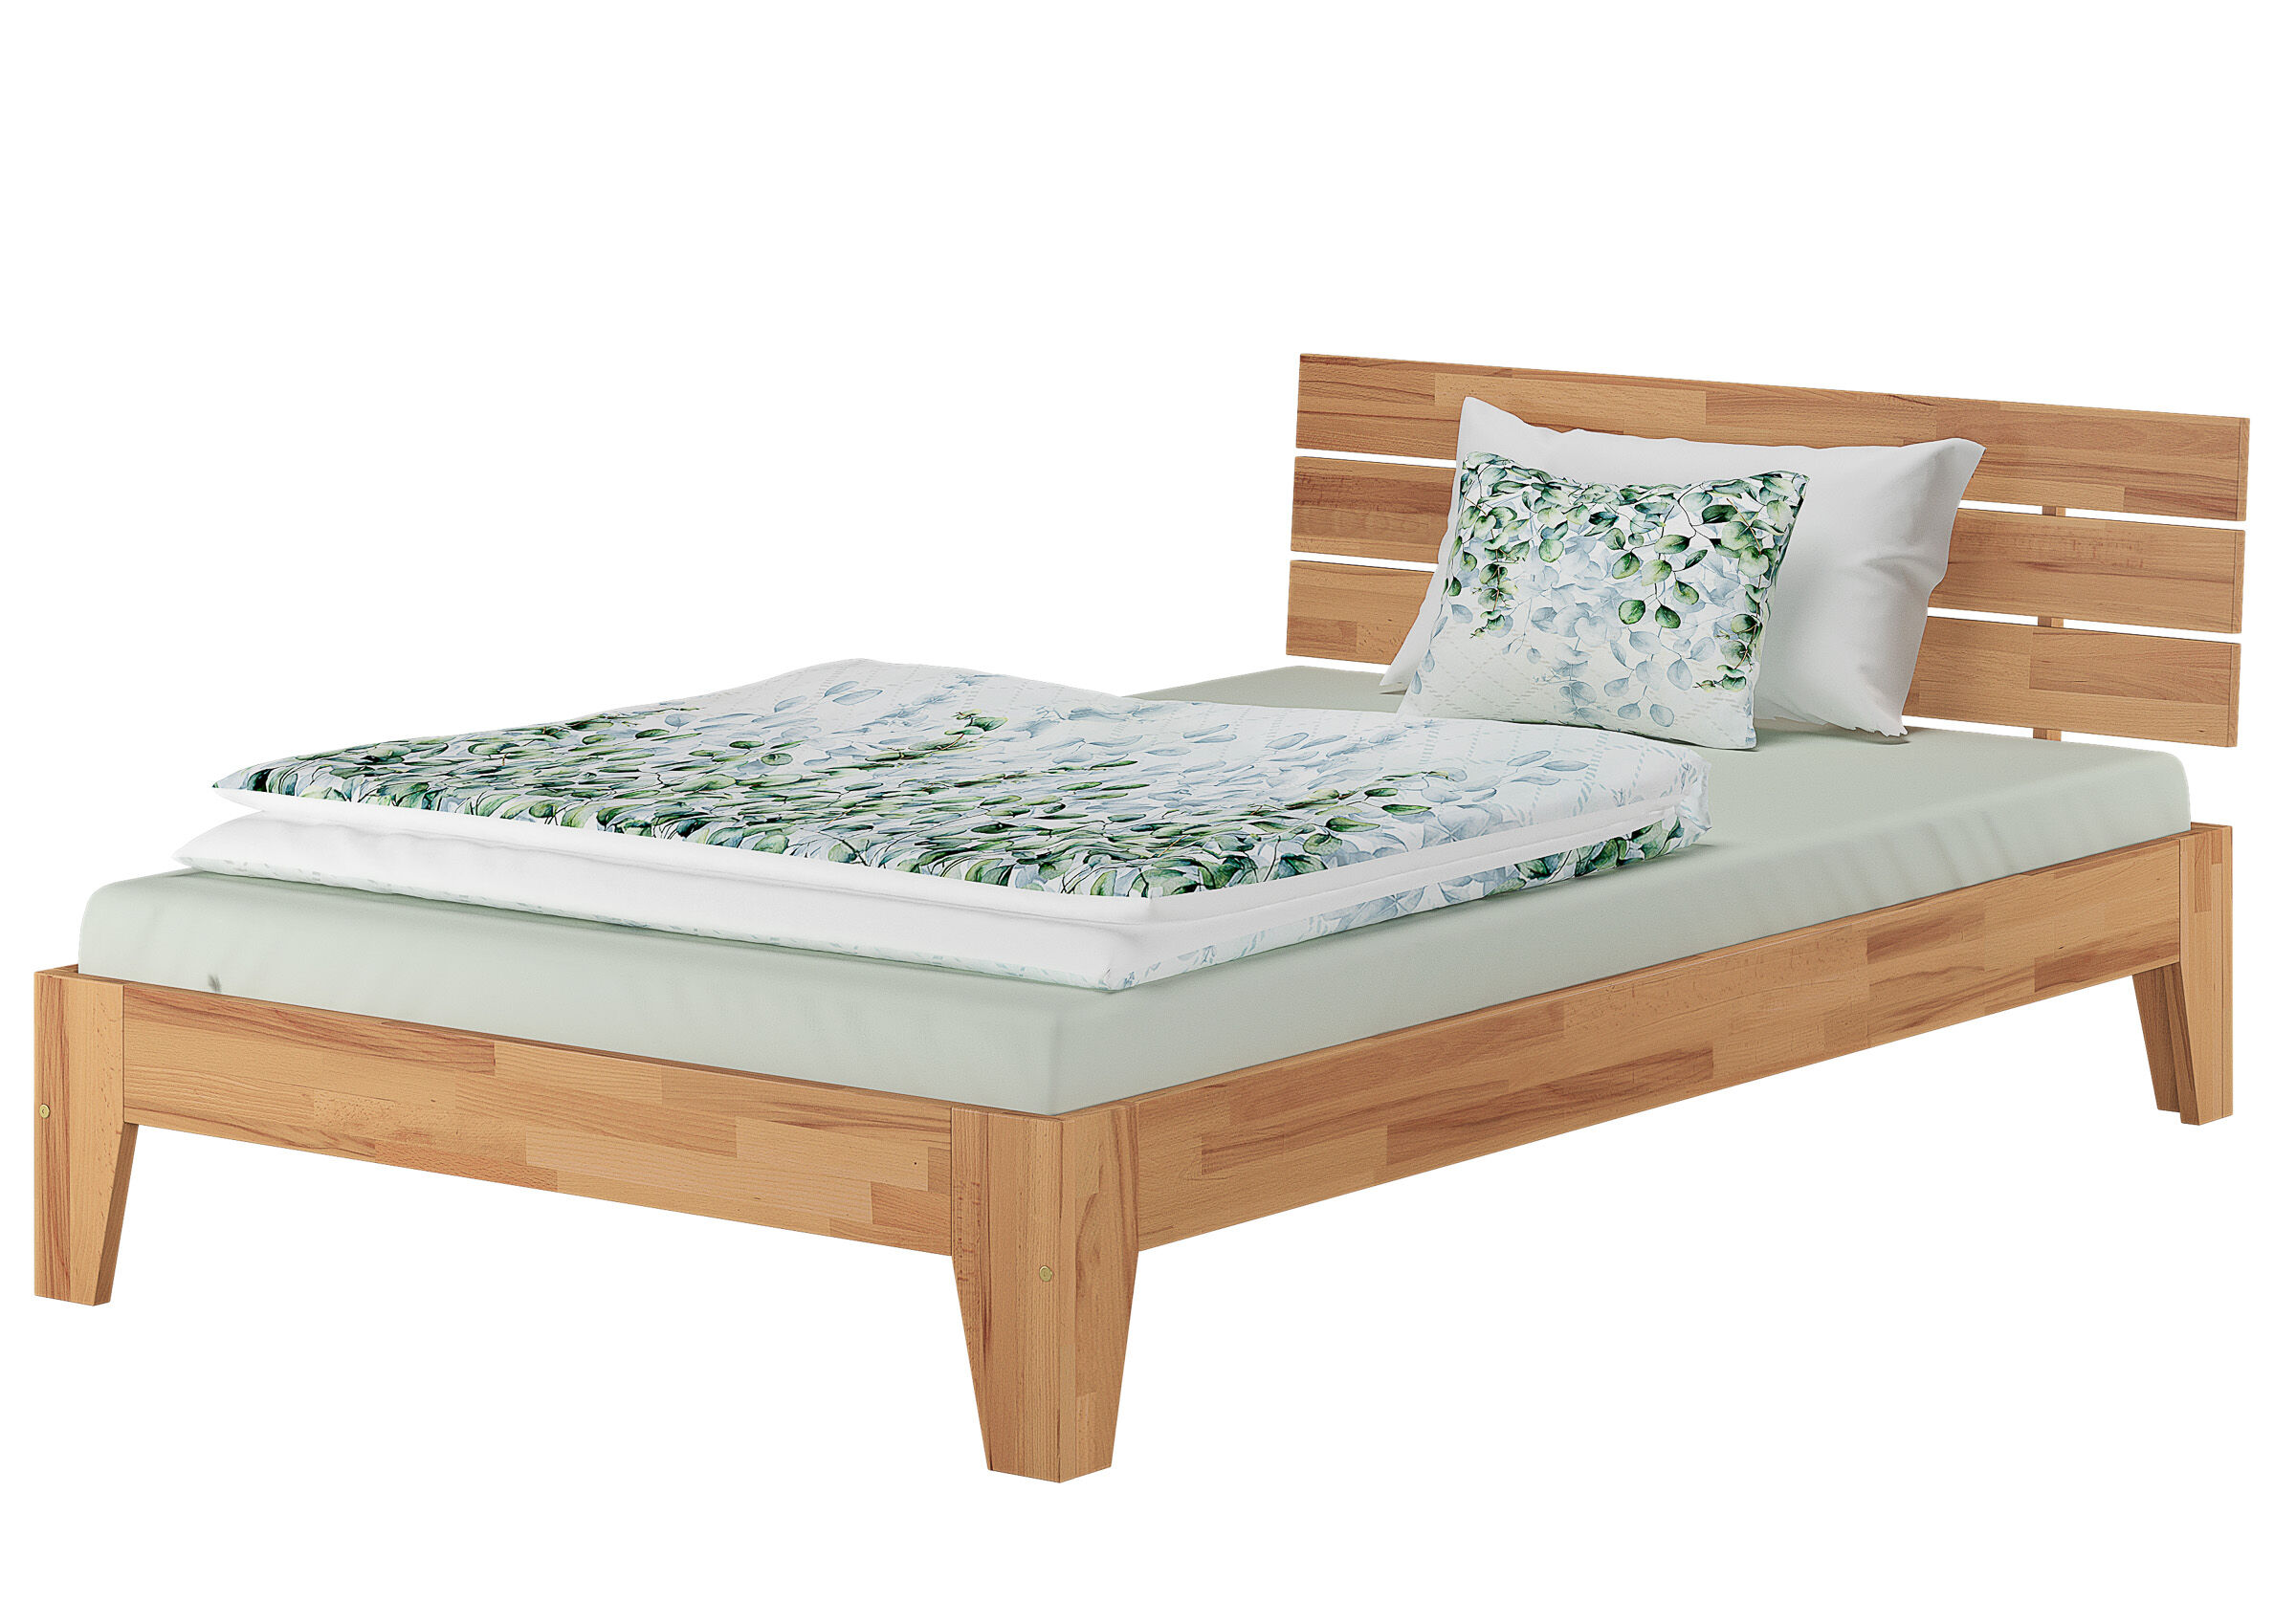 Lit simple hêtre laqué bois massif lit de jeune lit futon 120x220 avec accessoires au choix V-60.82-12-220